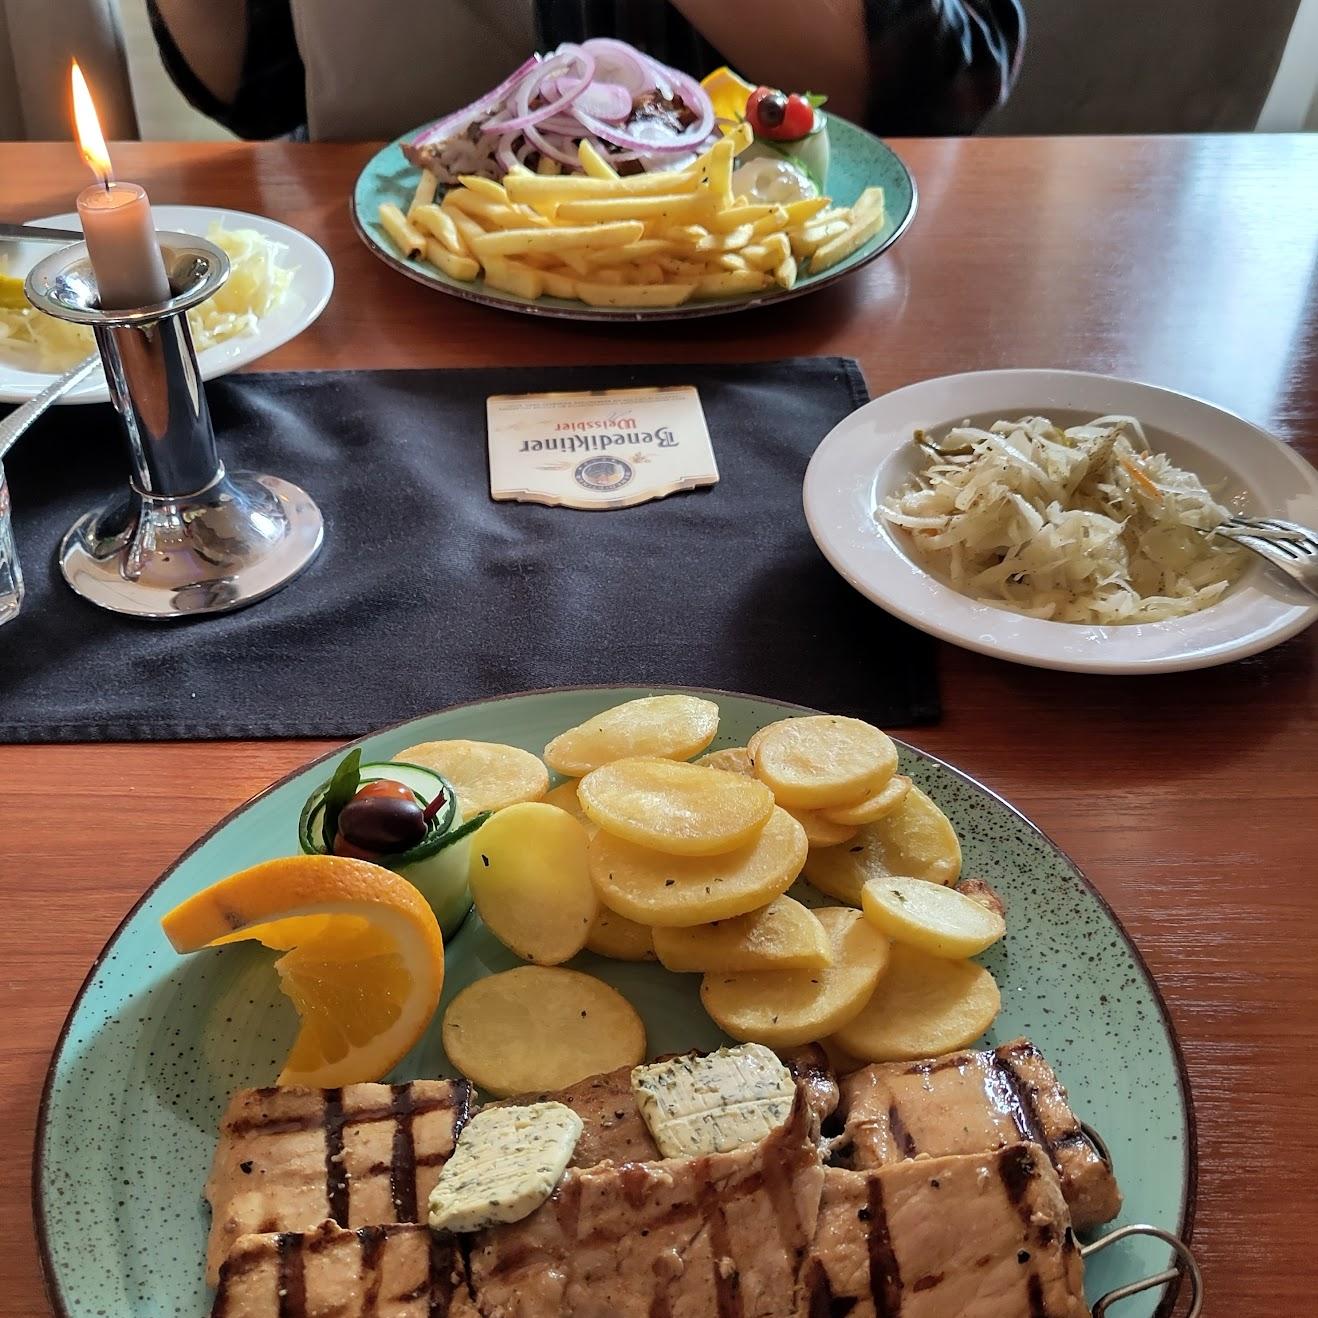 Restaurant "Marias" in Bremen